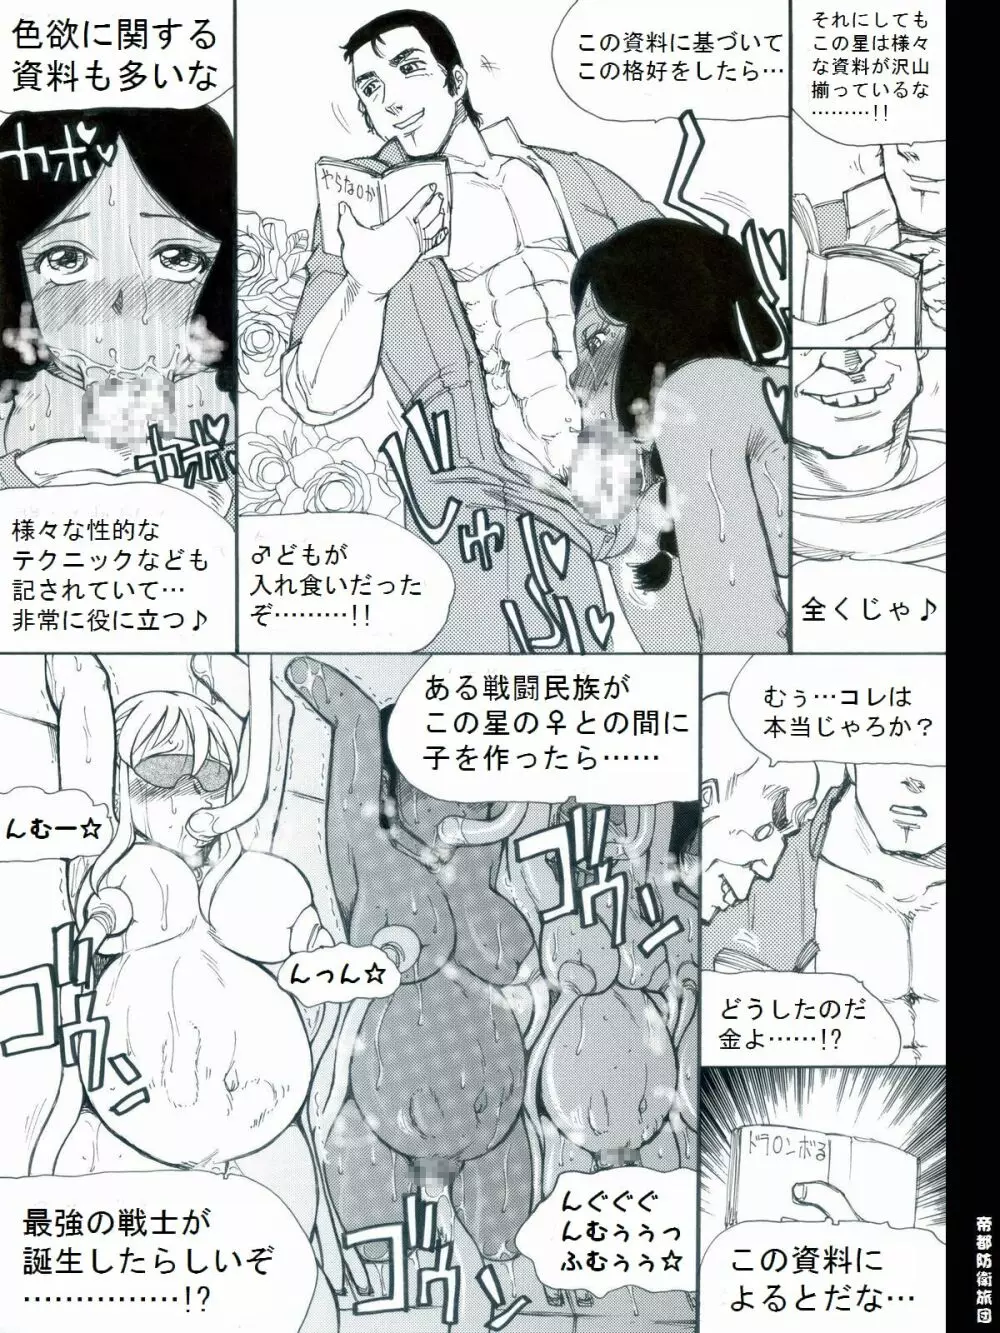 [帝都防衛旅団] RTKBOOK 9-3 「M○Xいぢり(3) 『PANPAN-MAN』」 17ページ